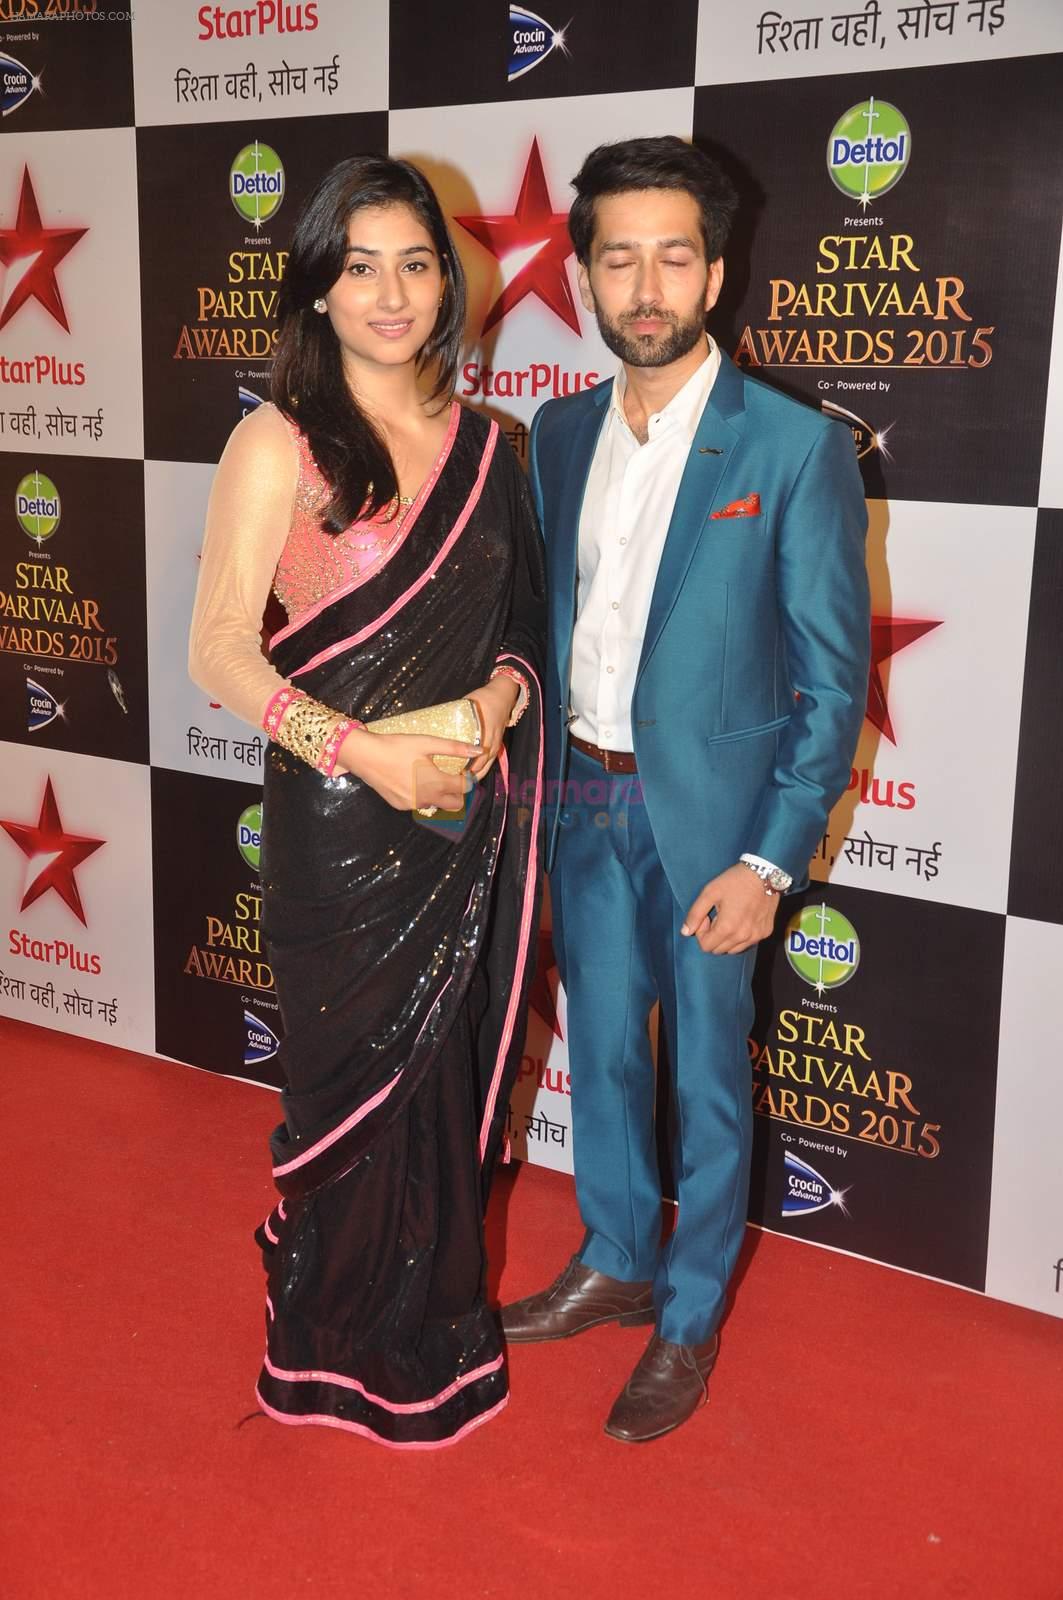 Nakuul Mehta at Star Pariwar Awards in Mumbai on 17th May 2015